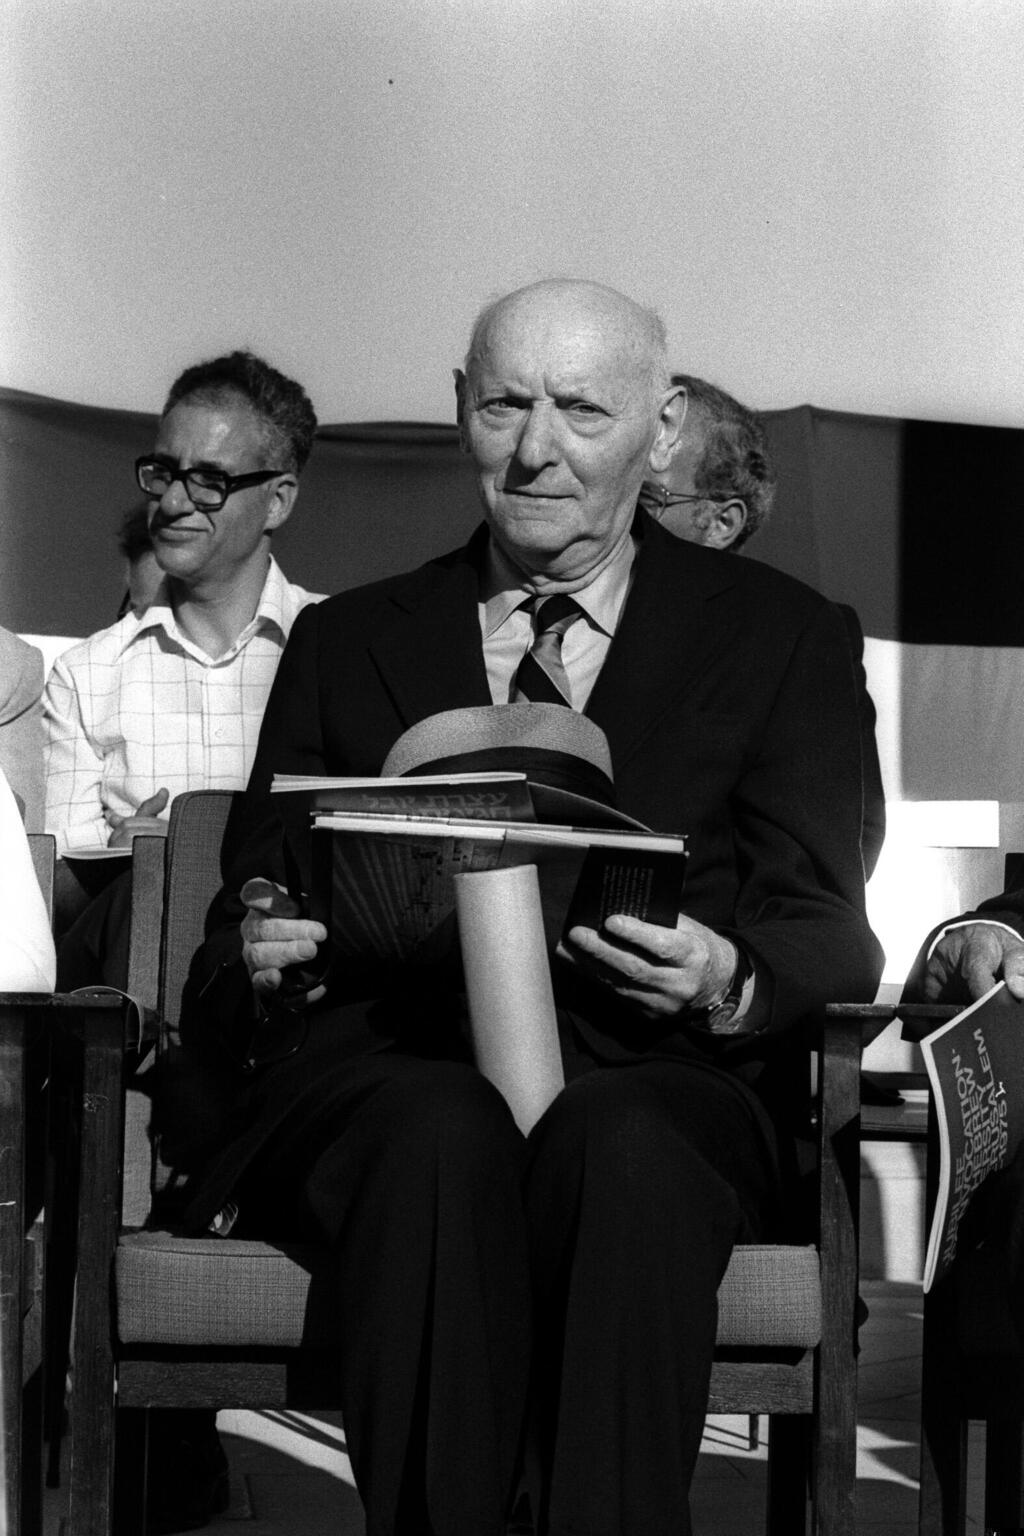 פנאי יצחק בשביס זינגר סופר זוכה פרס נובל ל ספרות שנת 1978